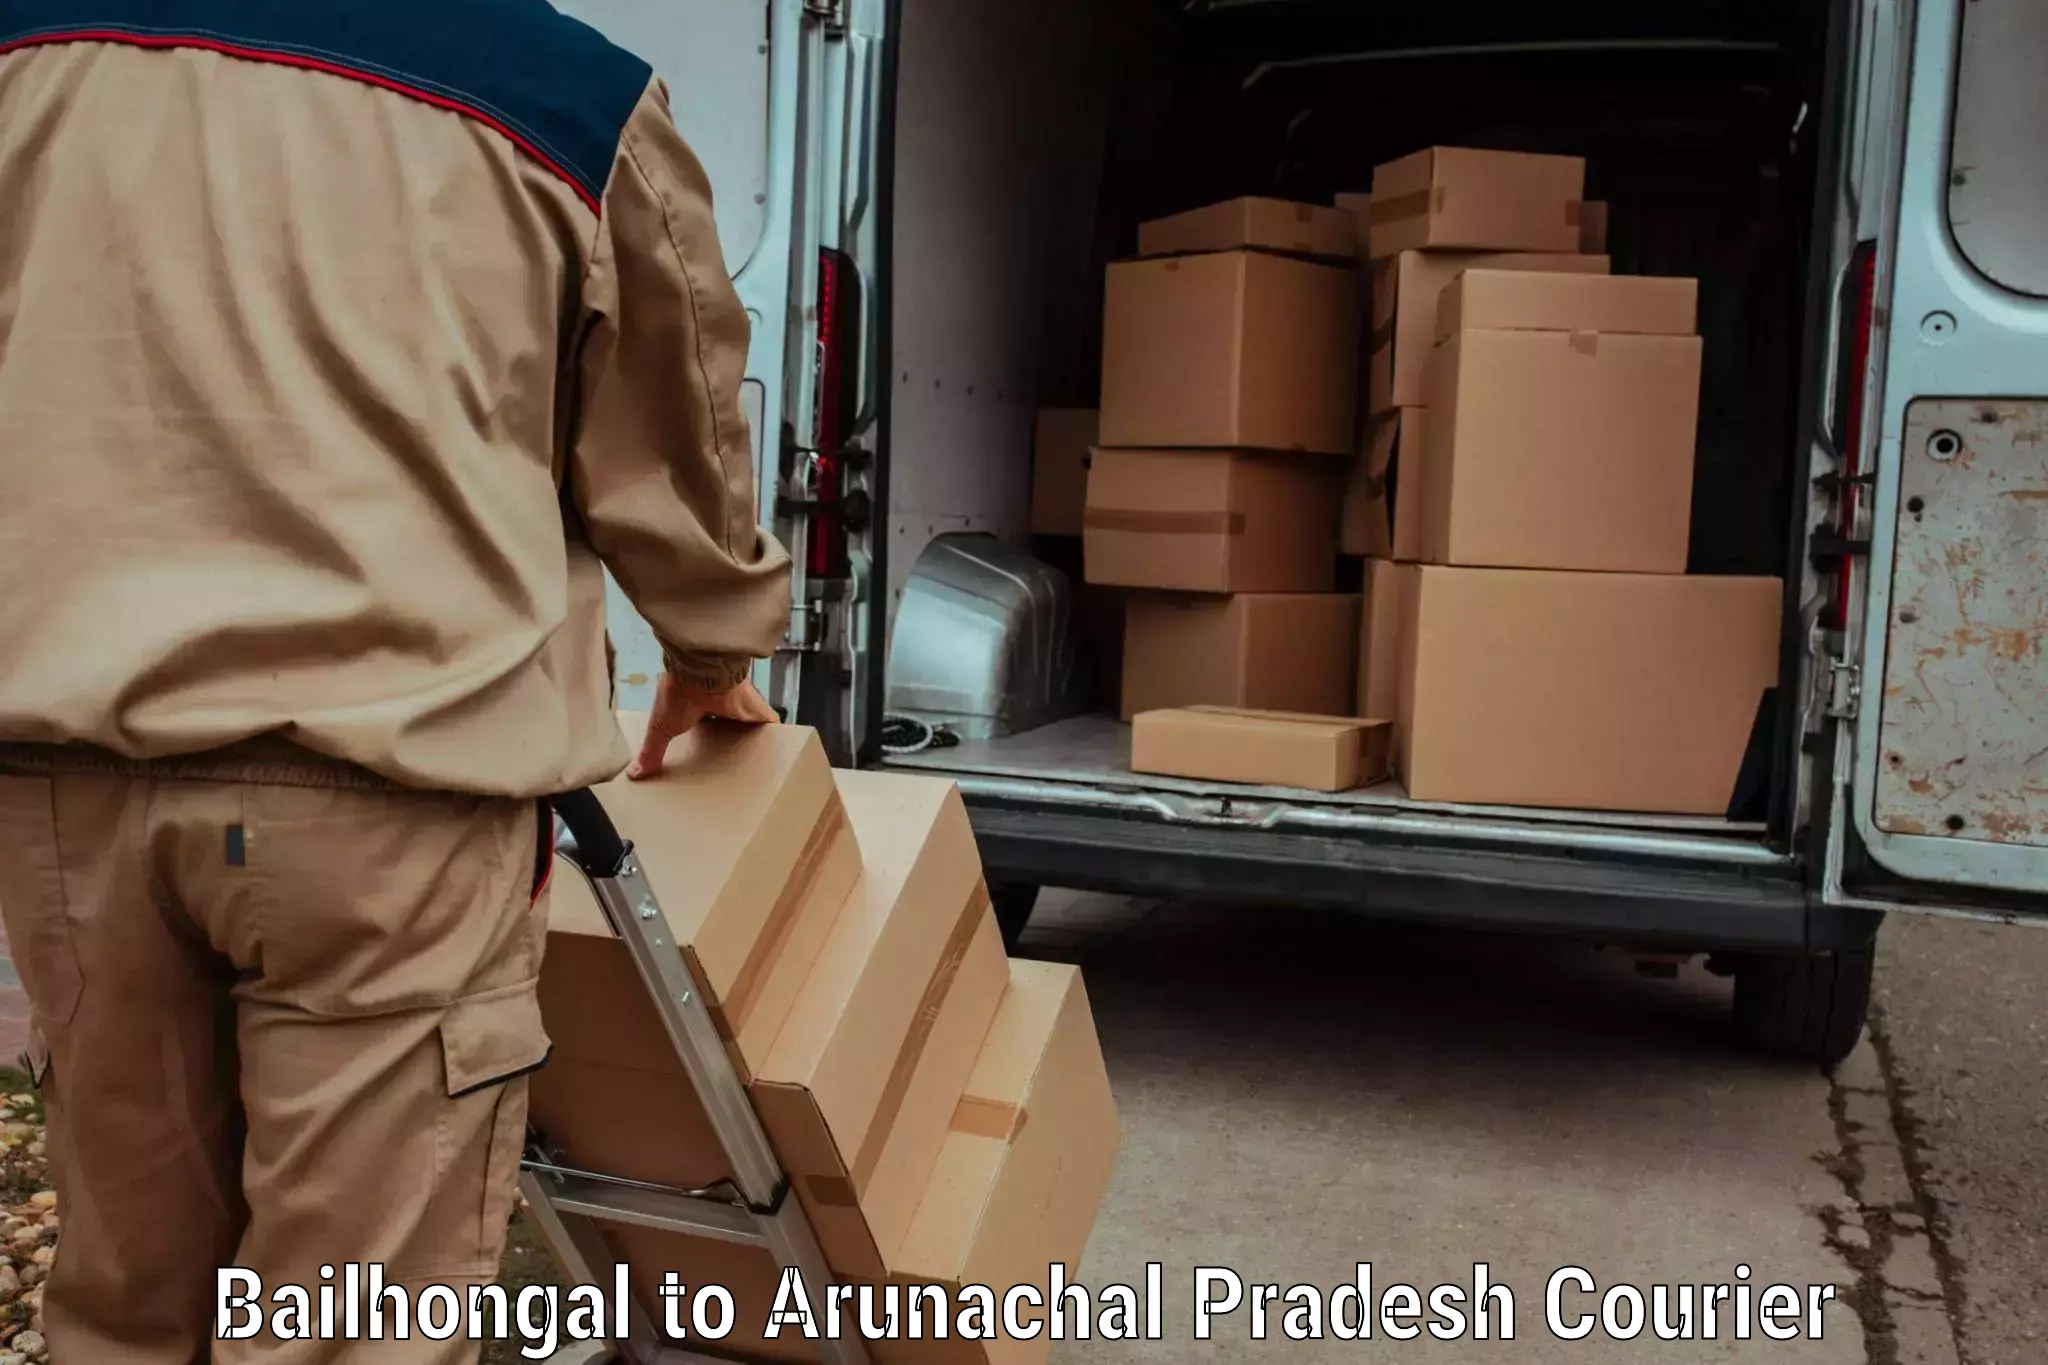 Baggage transport professionals Bailhongal to Arunachal Pradesh